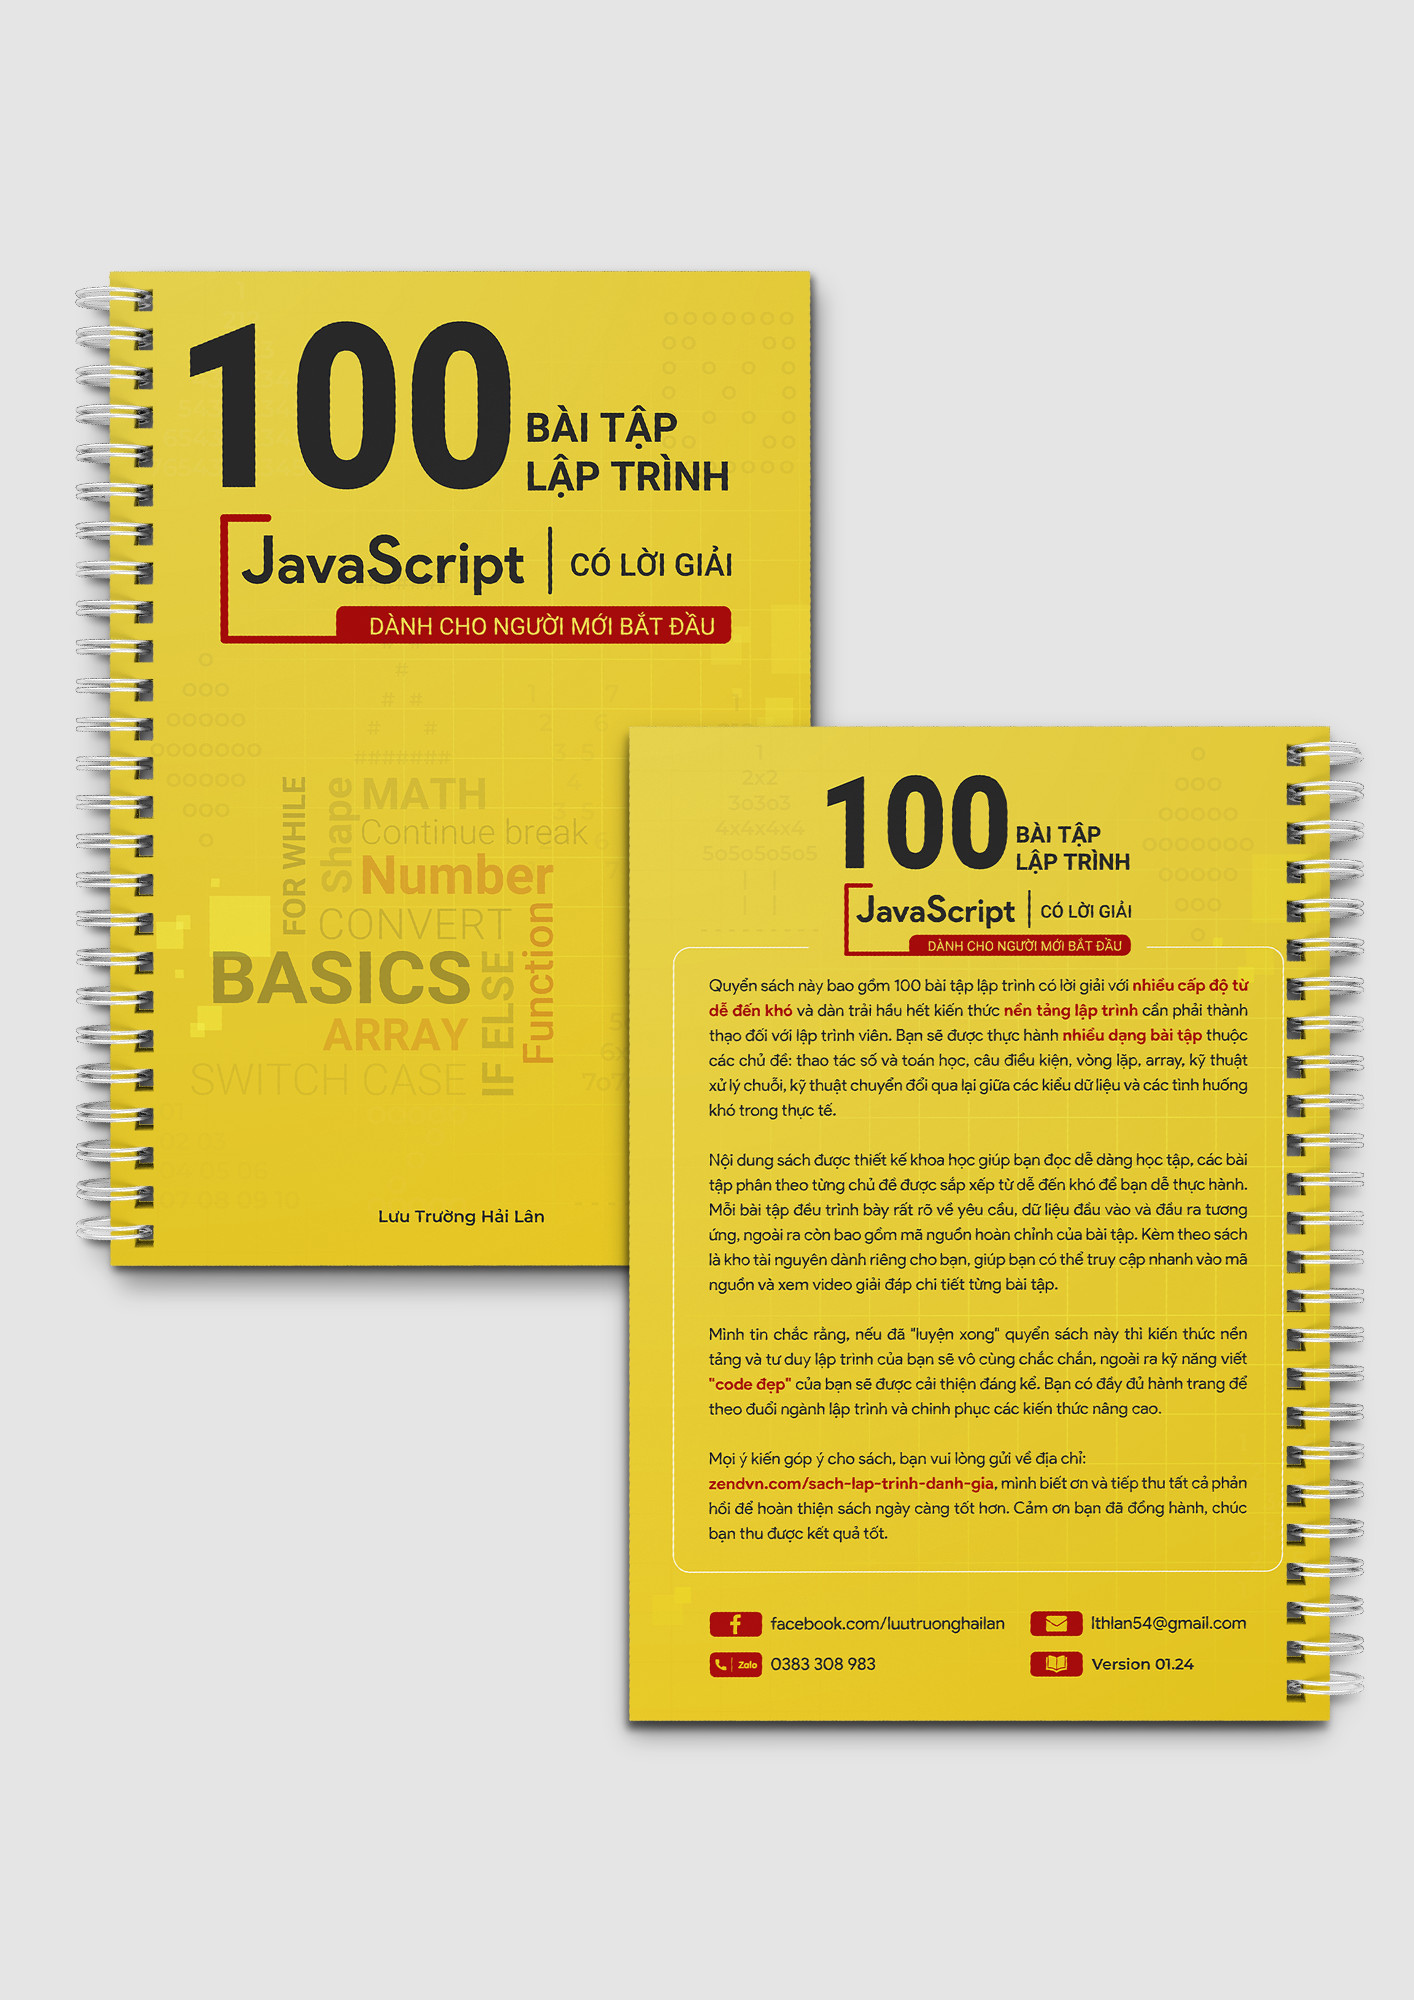 100 bài tập Javascript có lời giải